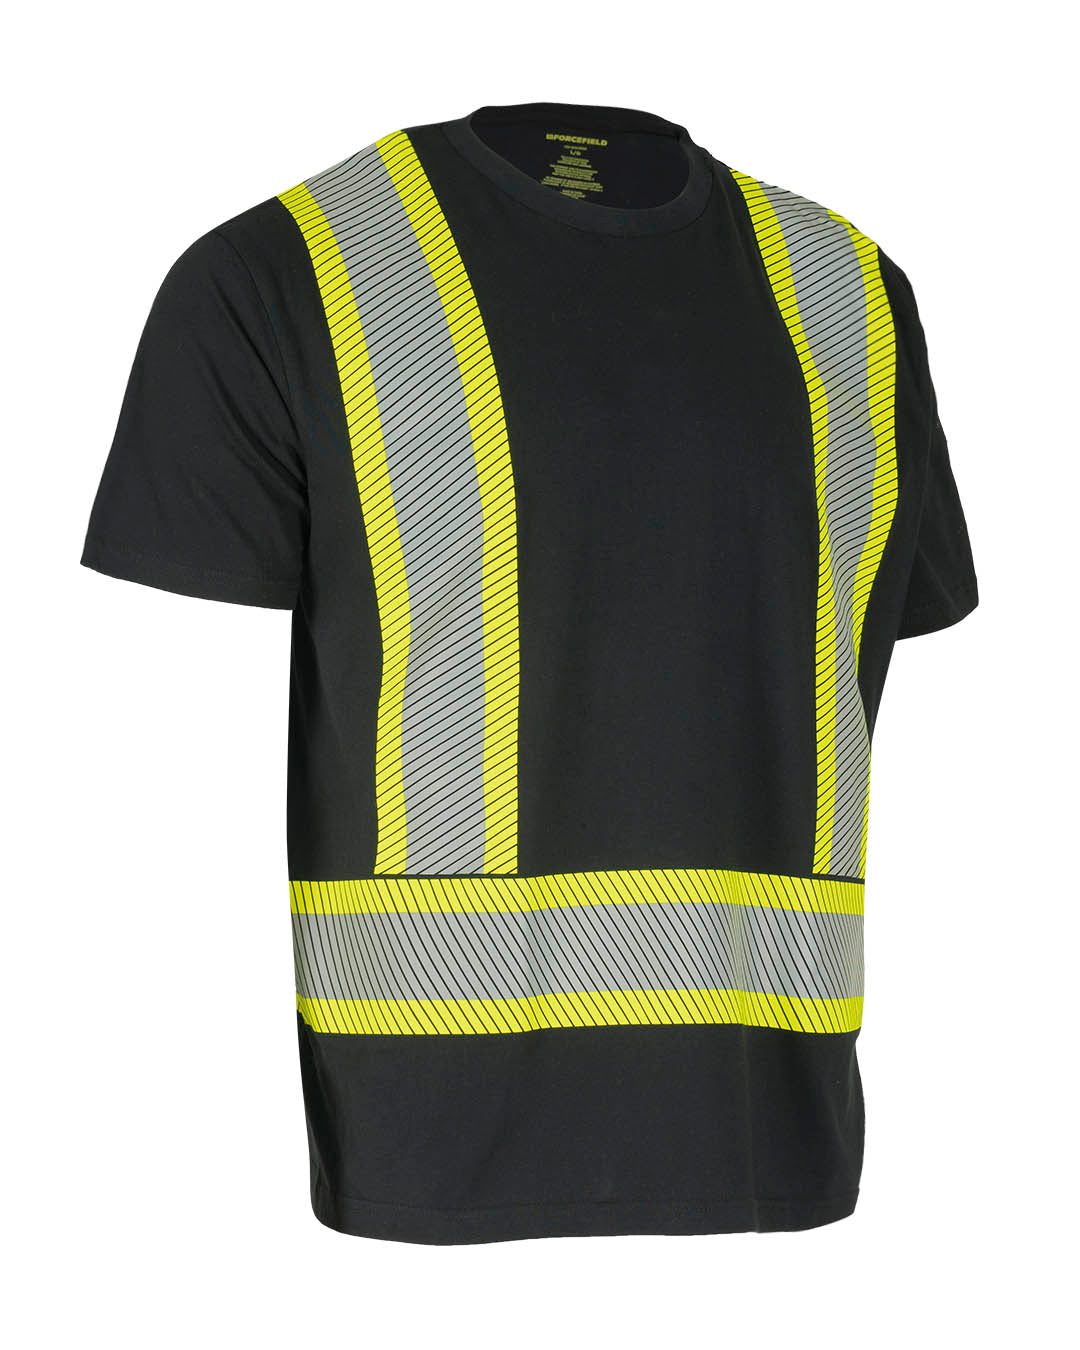 T-shirt de sécurité à manches courtes et col rond haute visibilité avec bande réfléchissante segmentée